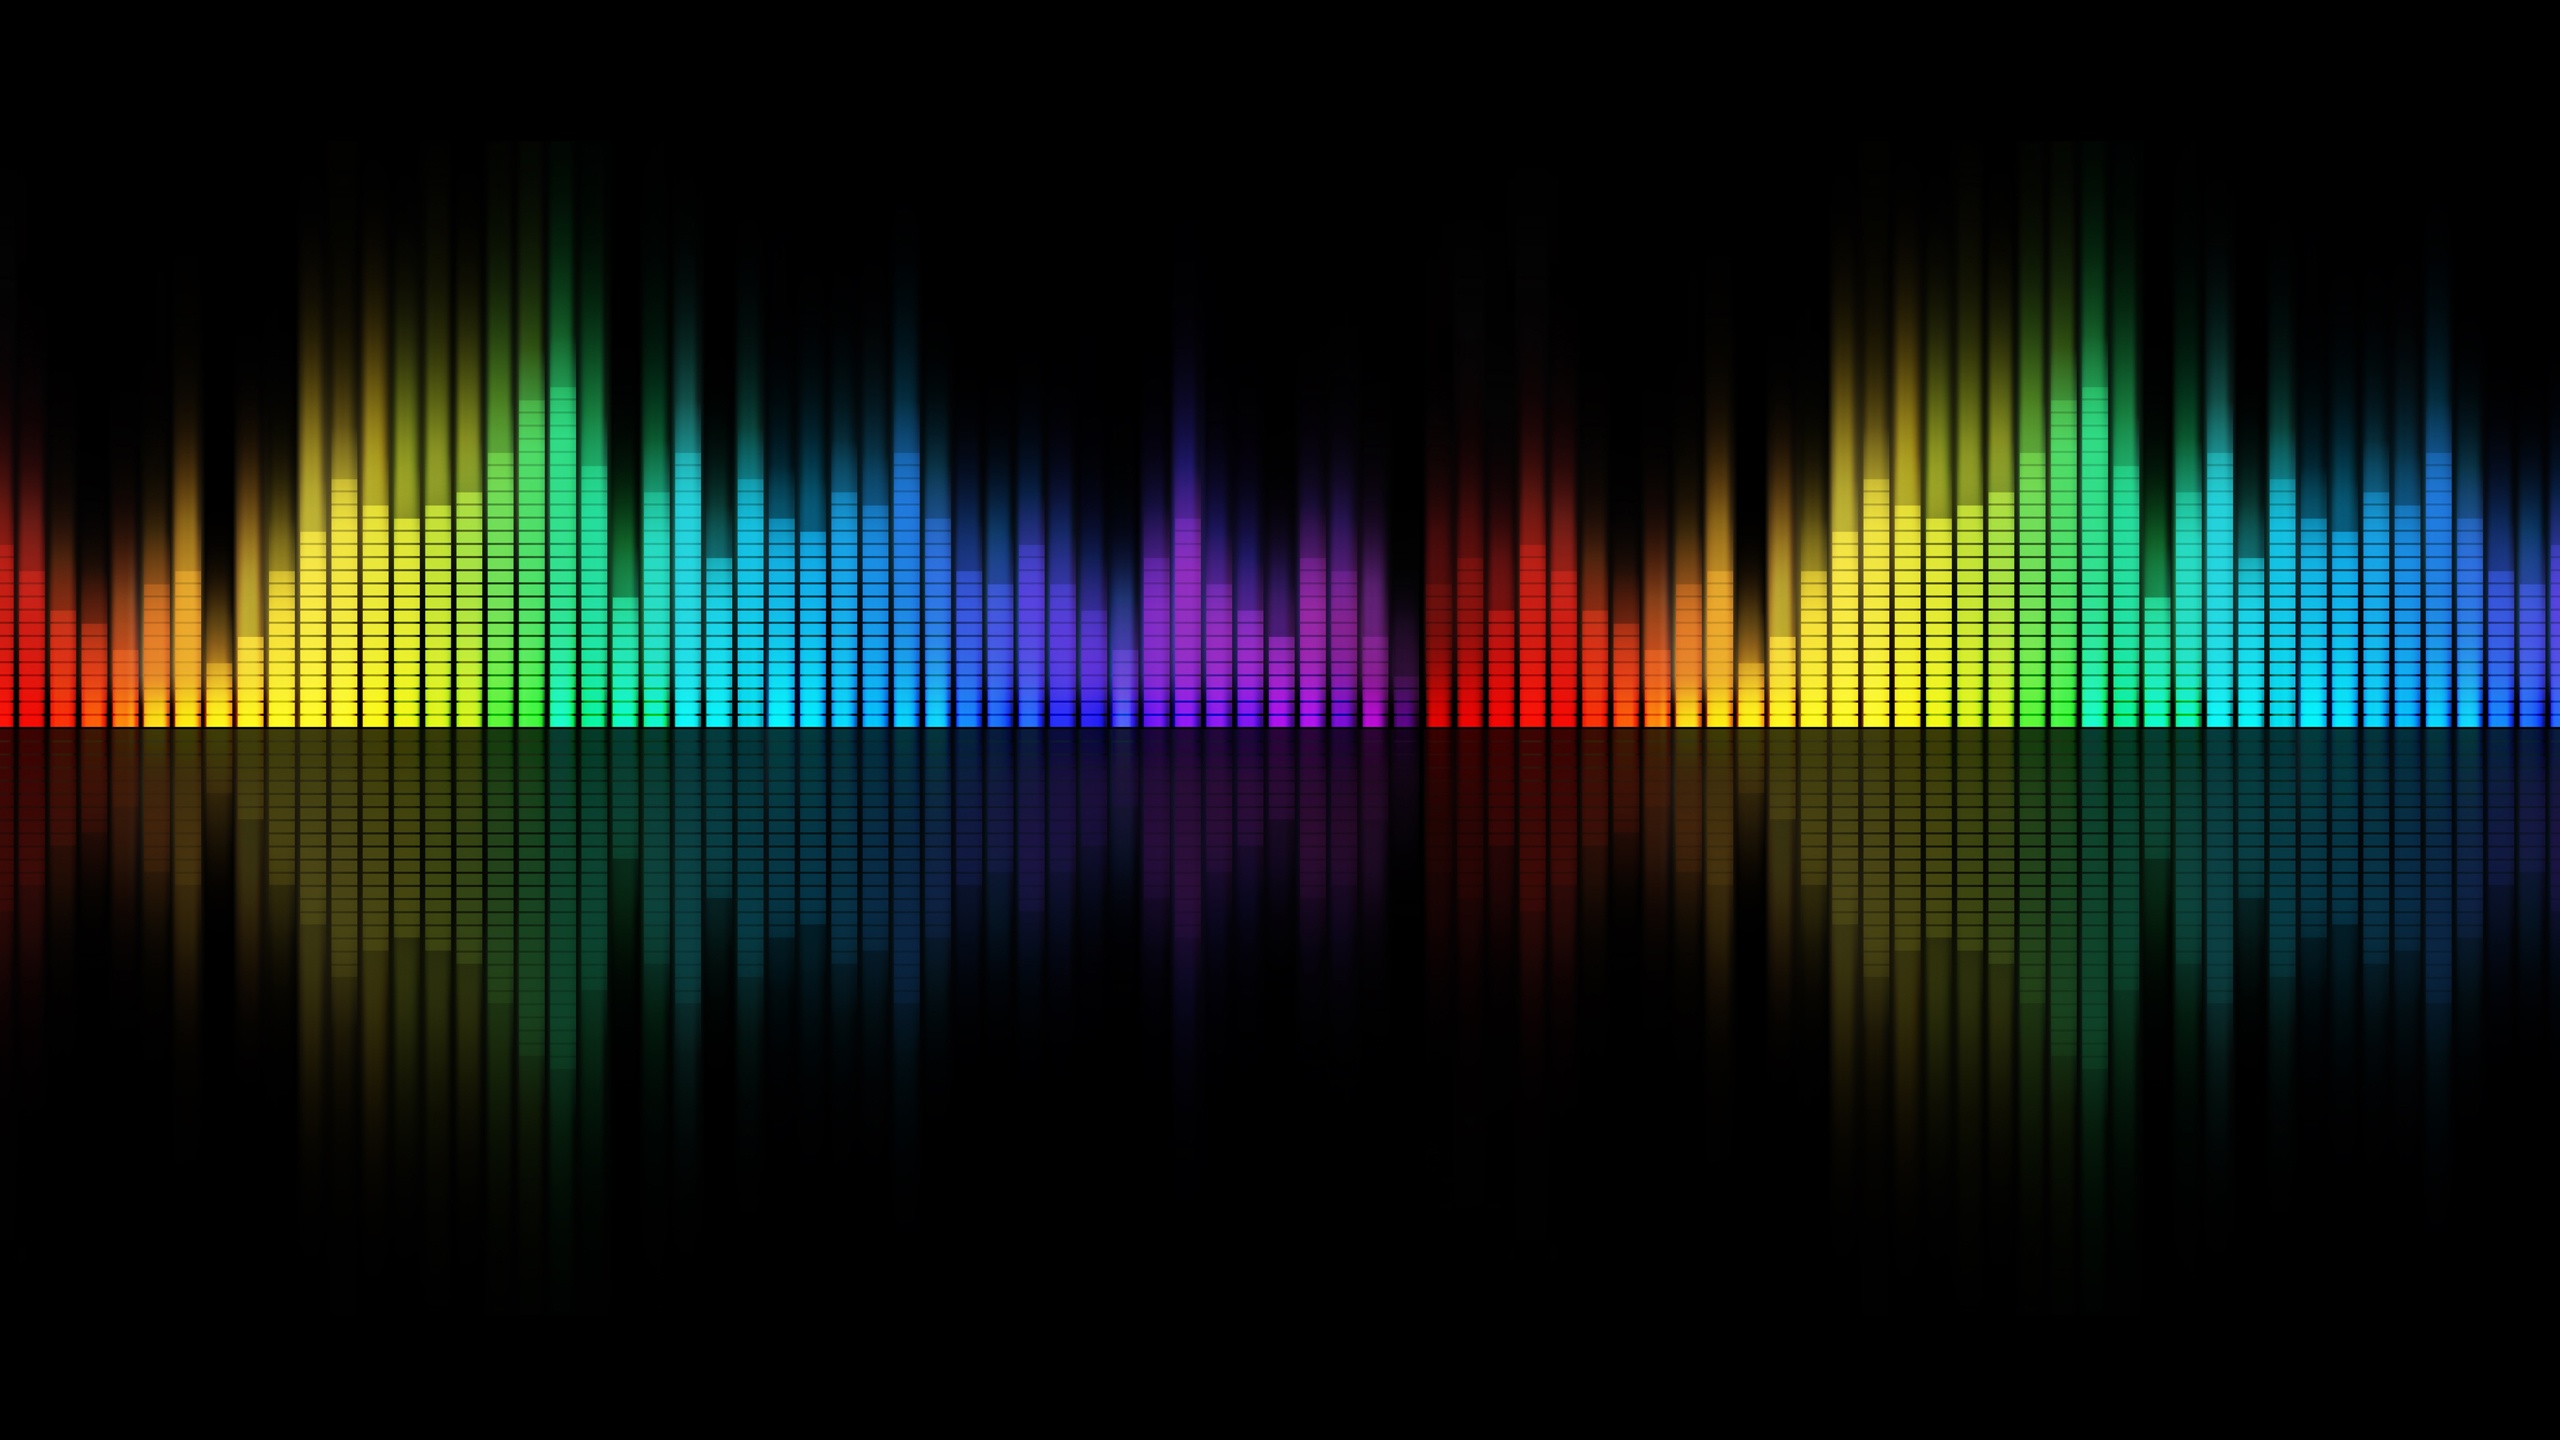 Steam Workshop Audio Visualizers đem đến cho bạn những trải nghiệm tuyệt vời khi thưởng thức âm nhạc. Với những họa tiết sóng nhạc độc đáo và đẹp mắt, bạn có thể tùy chỉnh các hiệu ứng hình ảnh của mình để tạo ra những bản hòa âm đầy màu sắc và sống động nhất. Hãy cùng khám phá những Steam Workshop Audio Visualizers tuyệt vời trên kênh của chúng tôi.